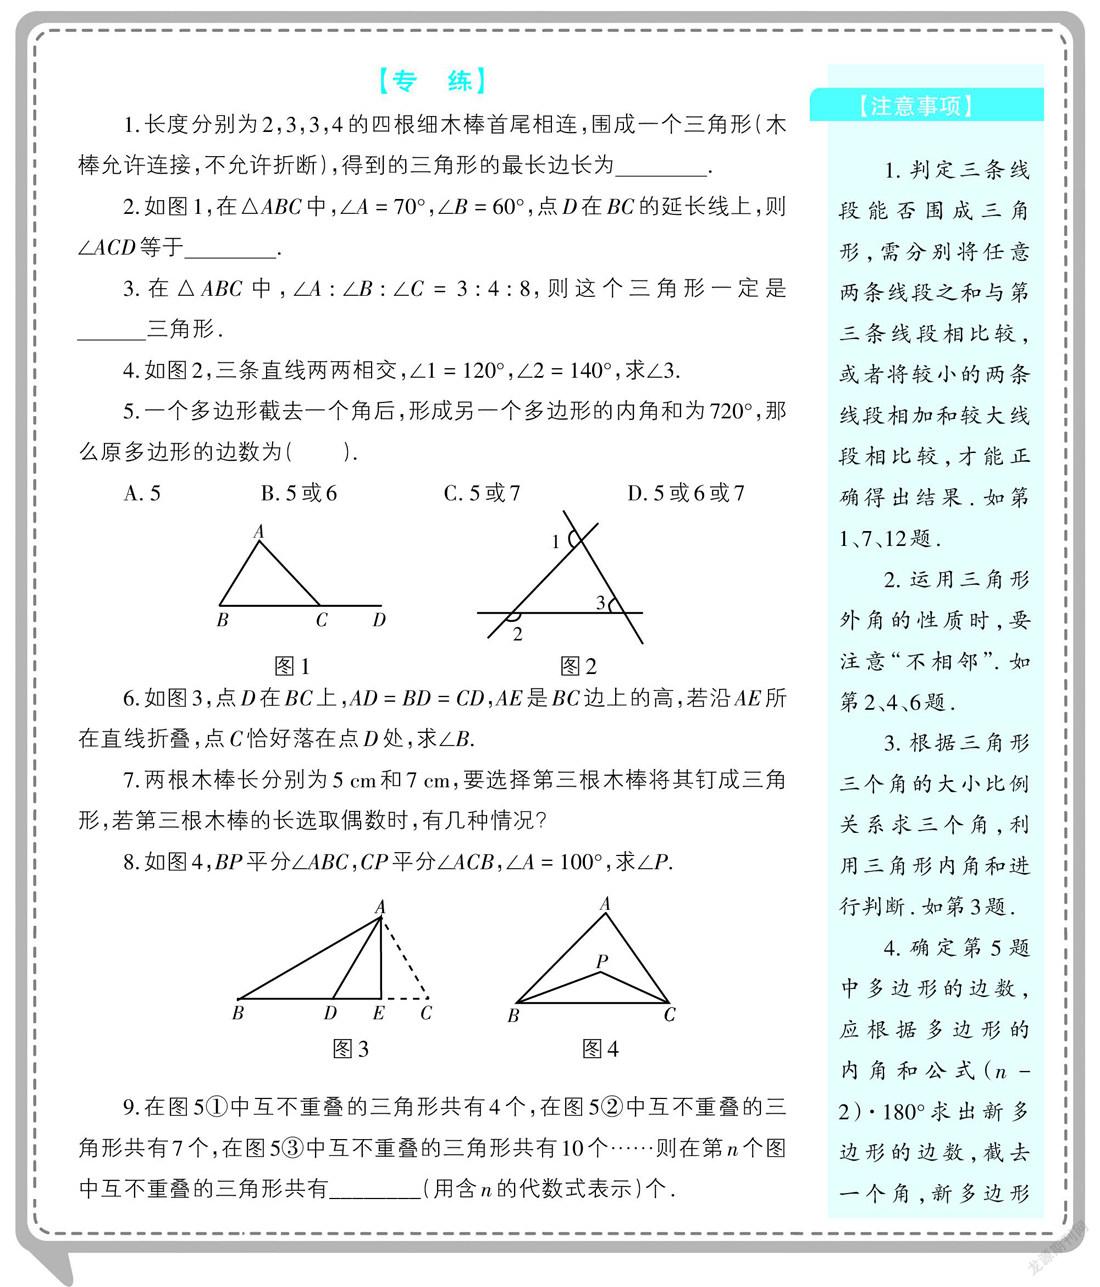 三角形典型易错题 参考网